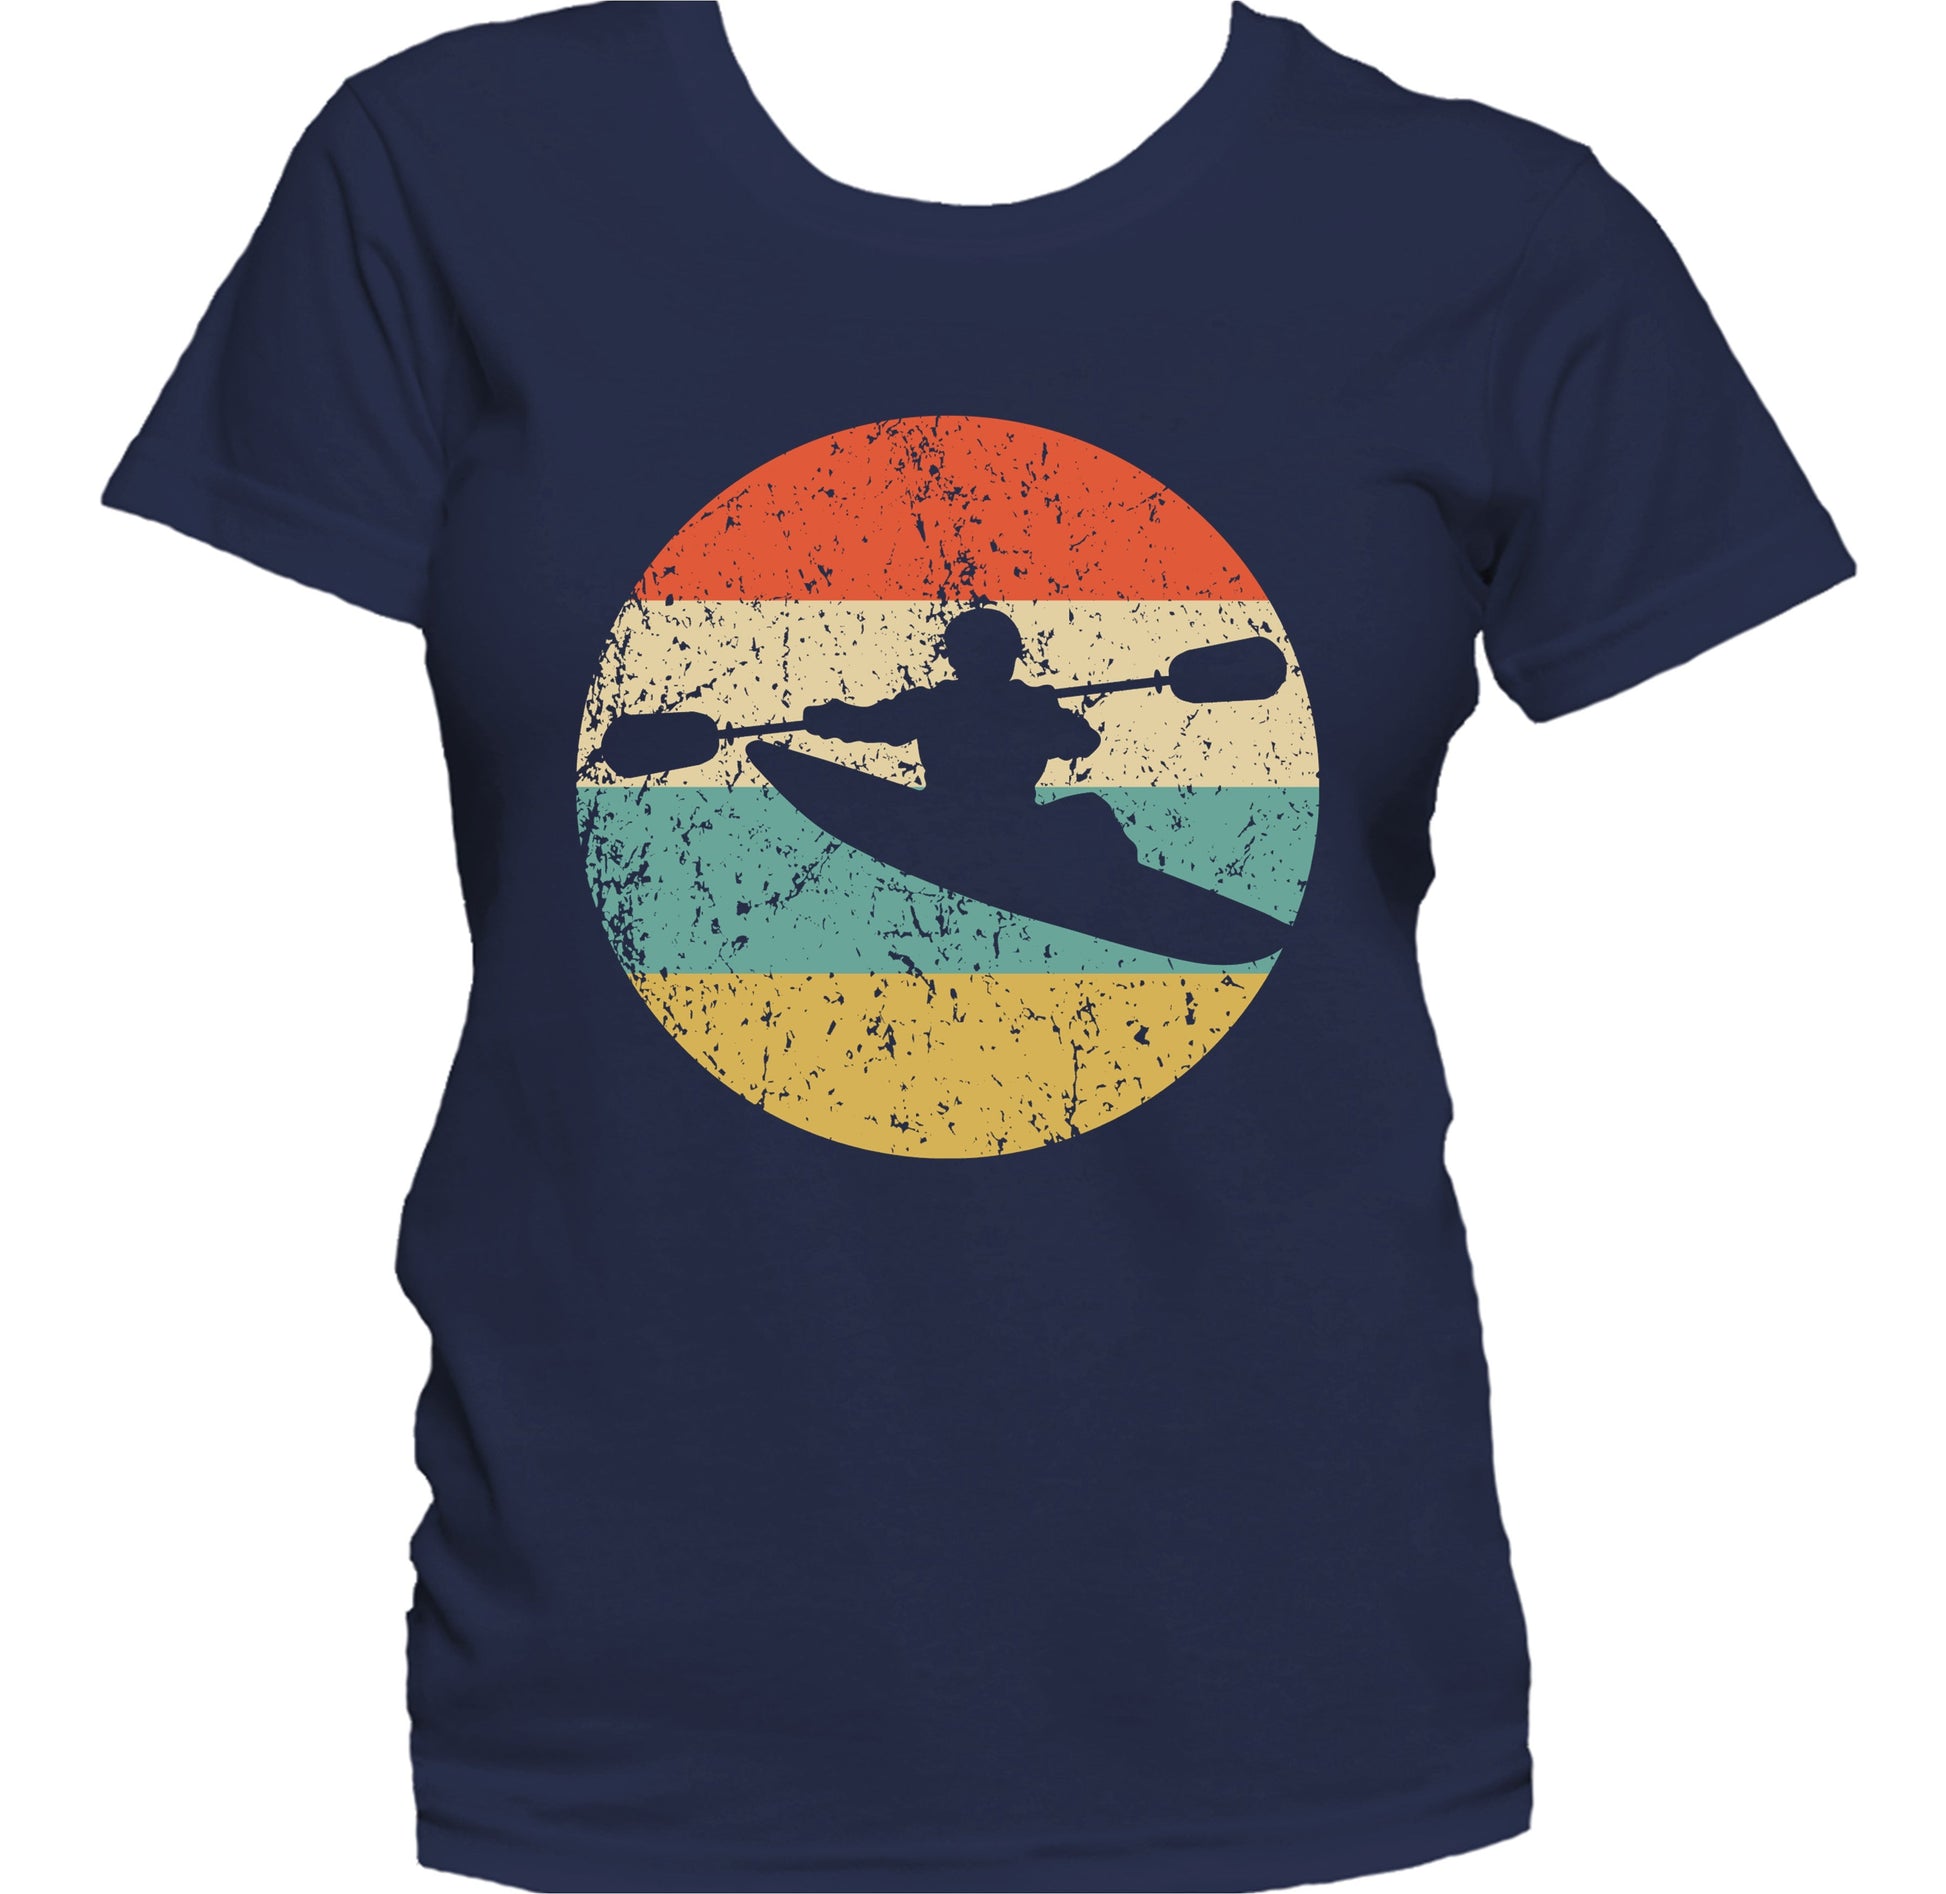 Kayaking Kayaker Silhouette Retro Kayak Women's T-Shirt